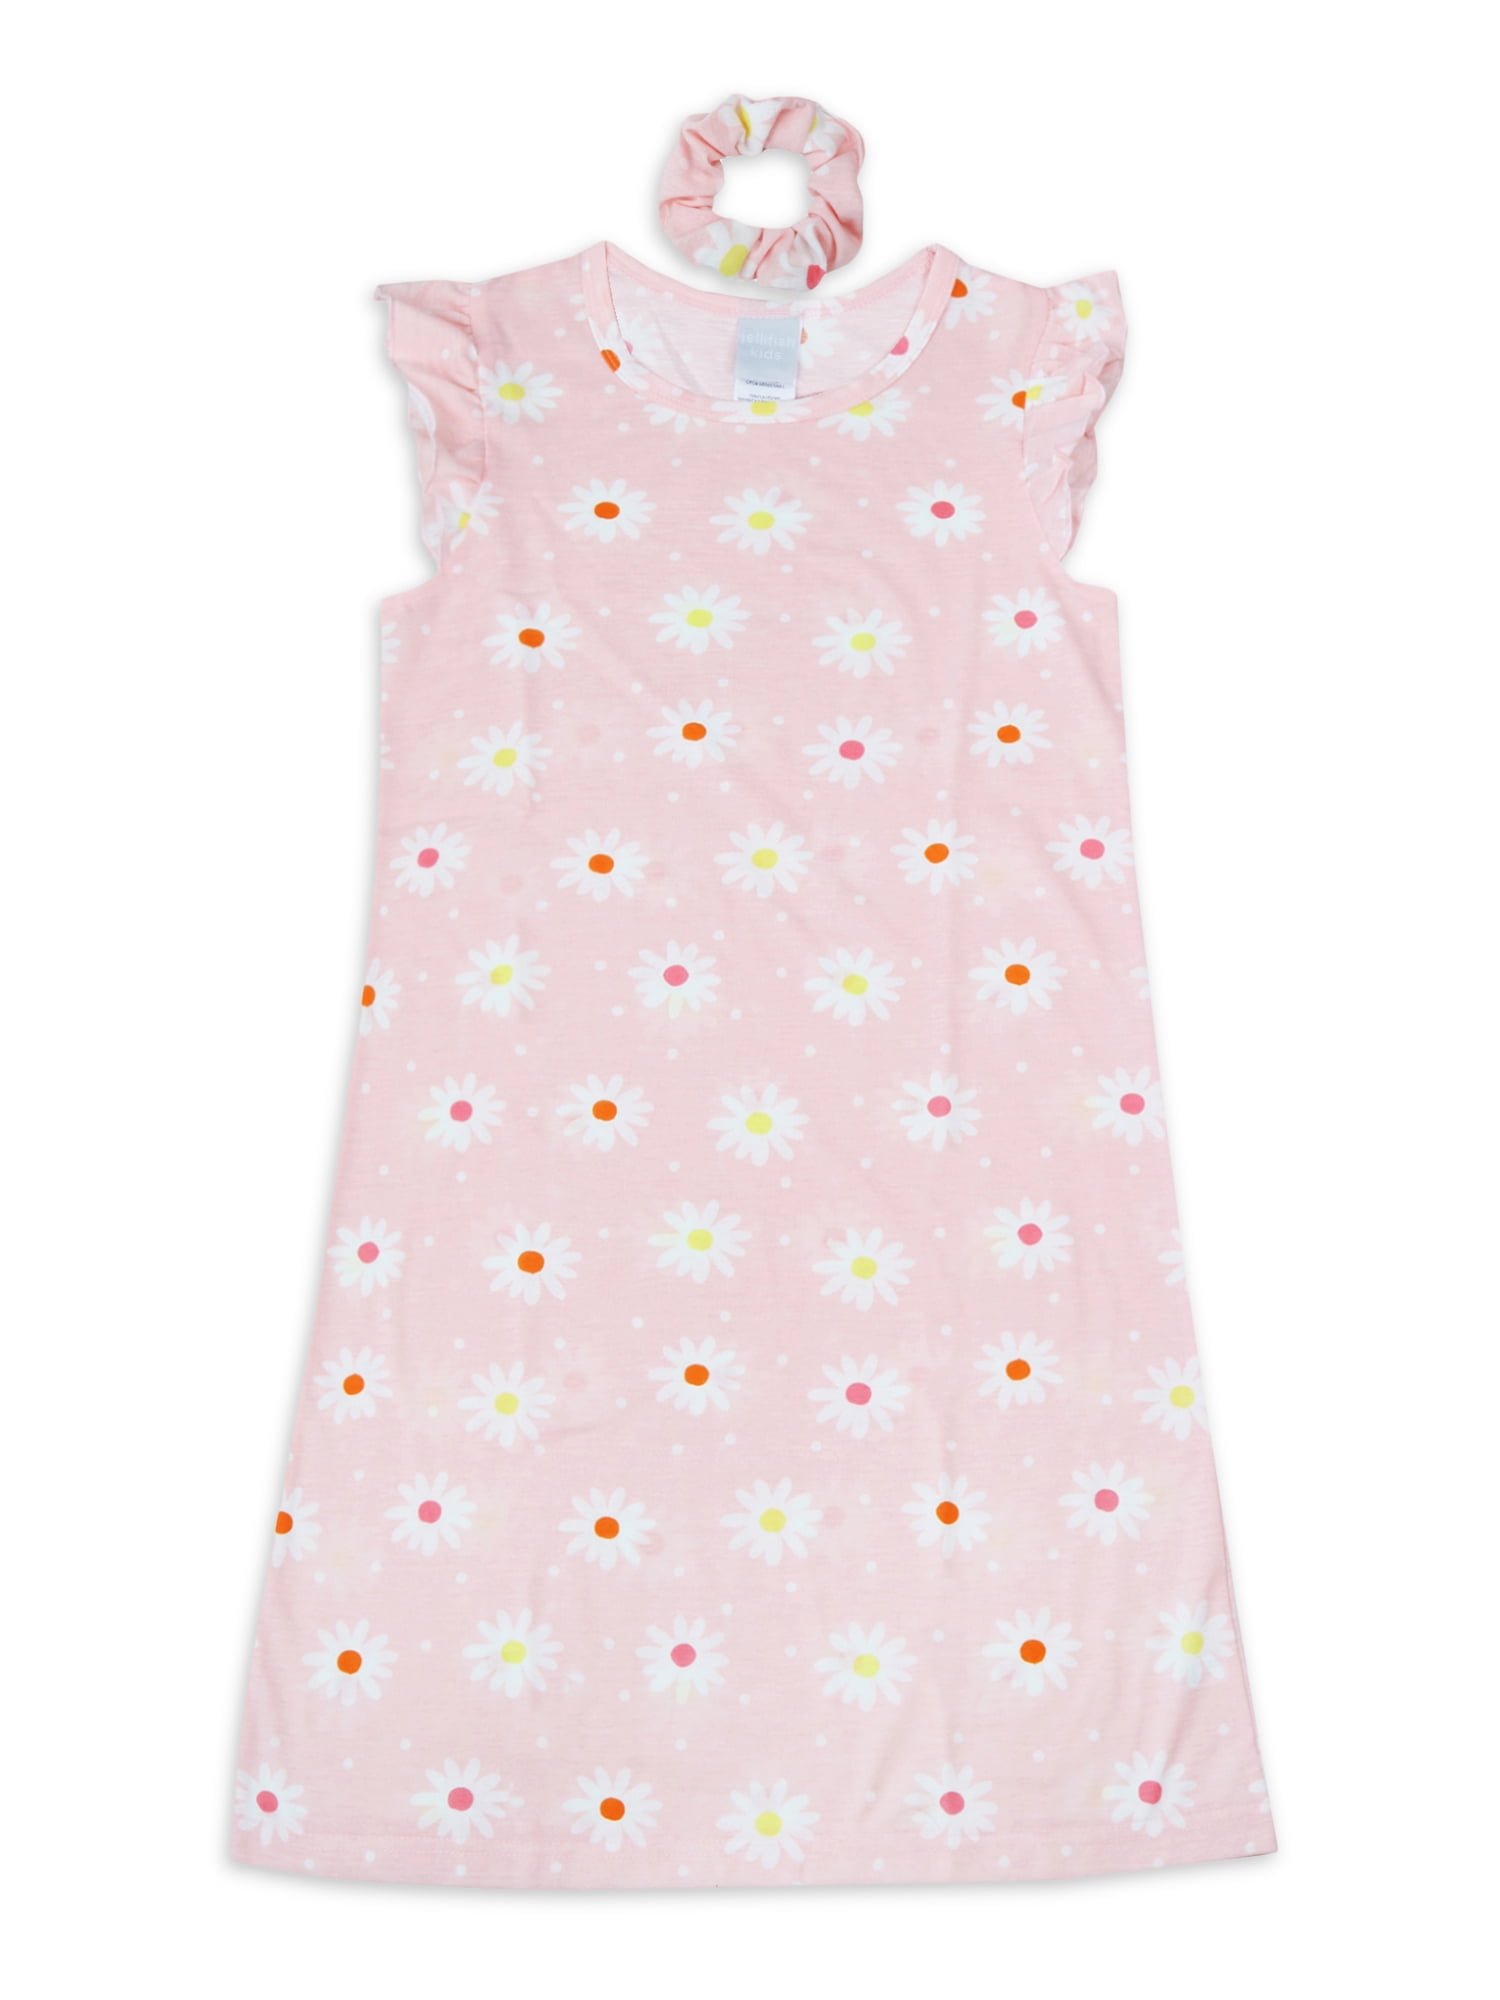 Jellifish Kids Girls Short Sleeve Ruffle Nightgown Pajama with ...